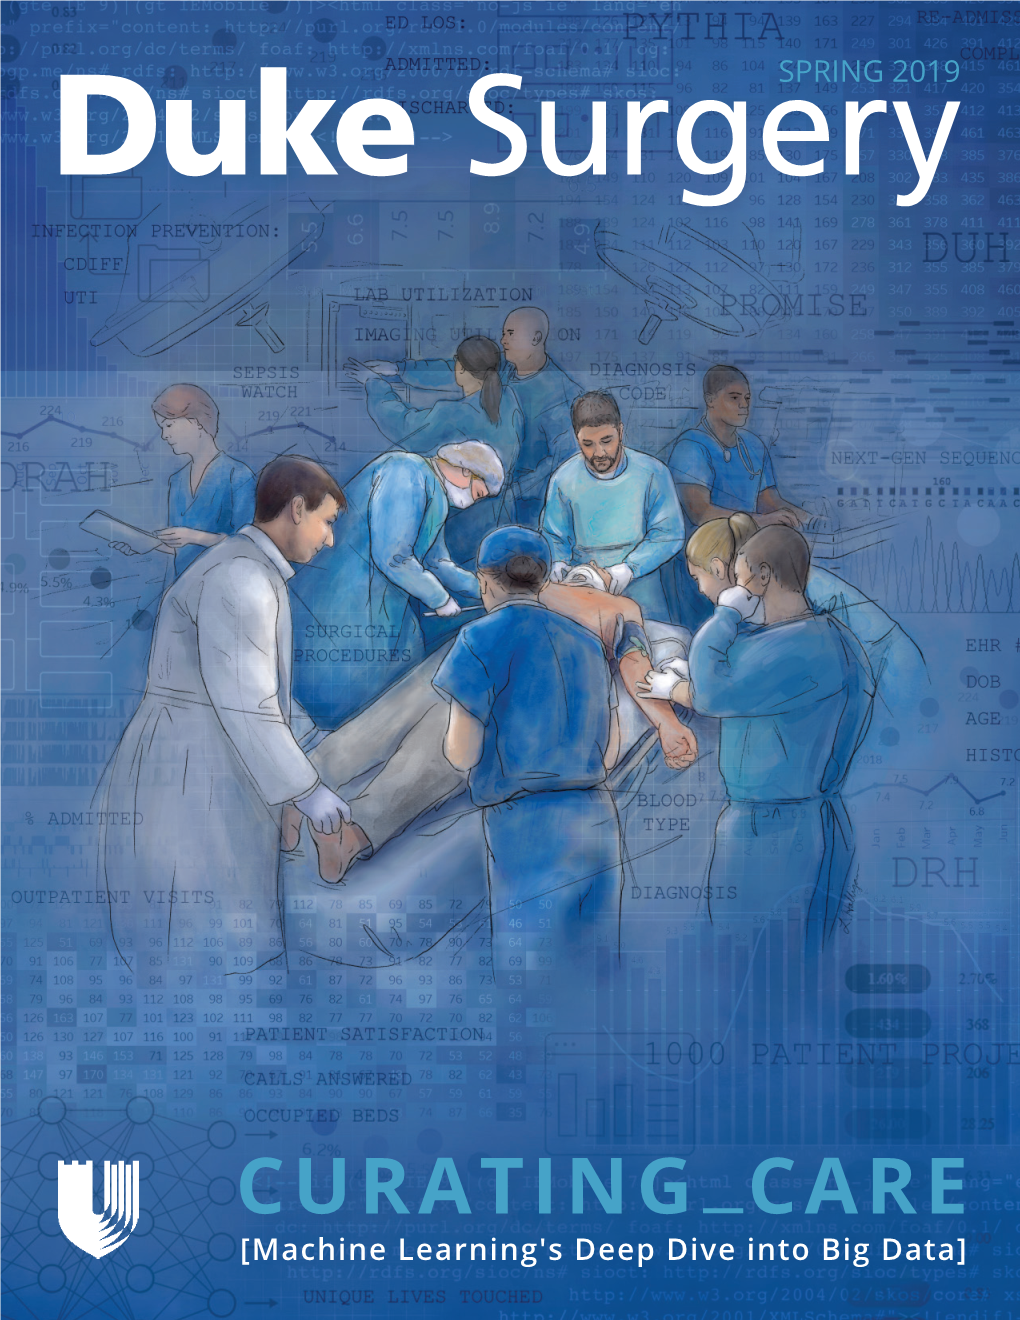 Duke Surgery Spring 2019 Newsletter